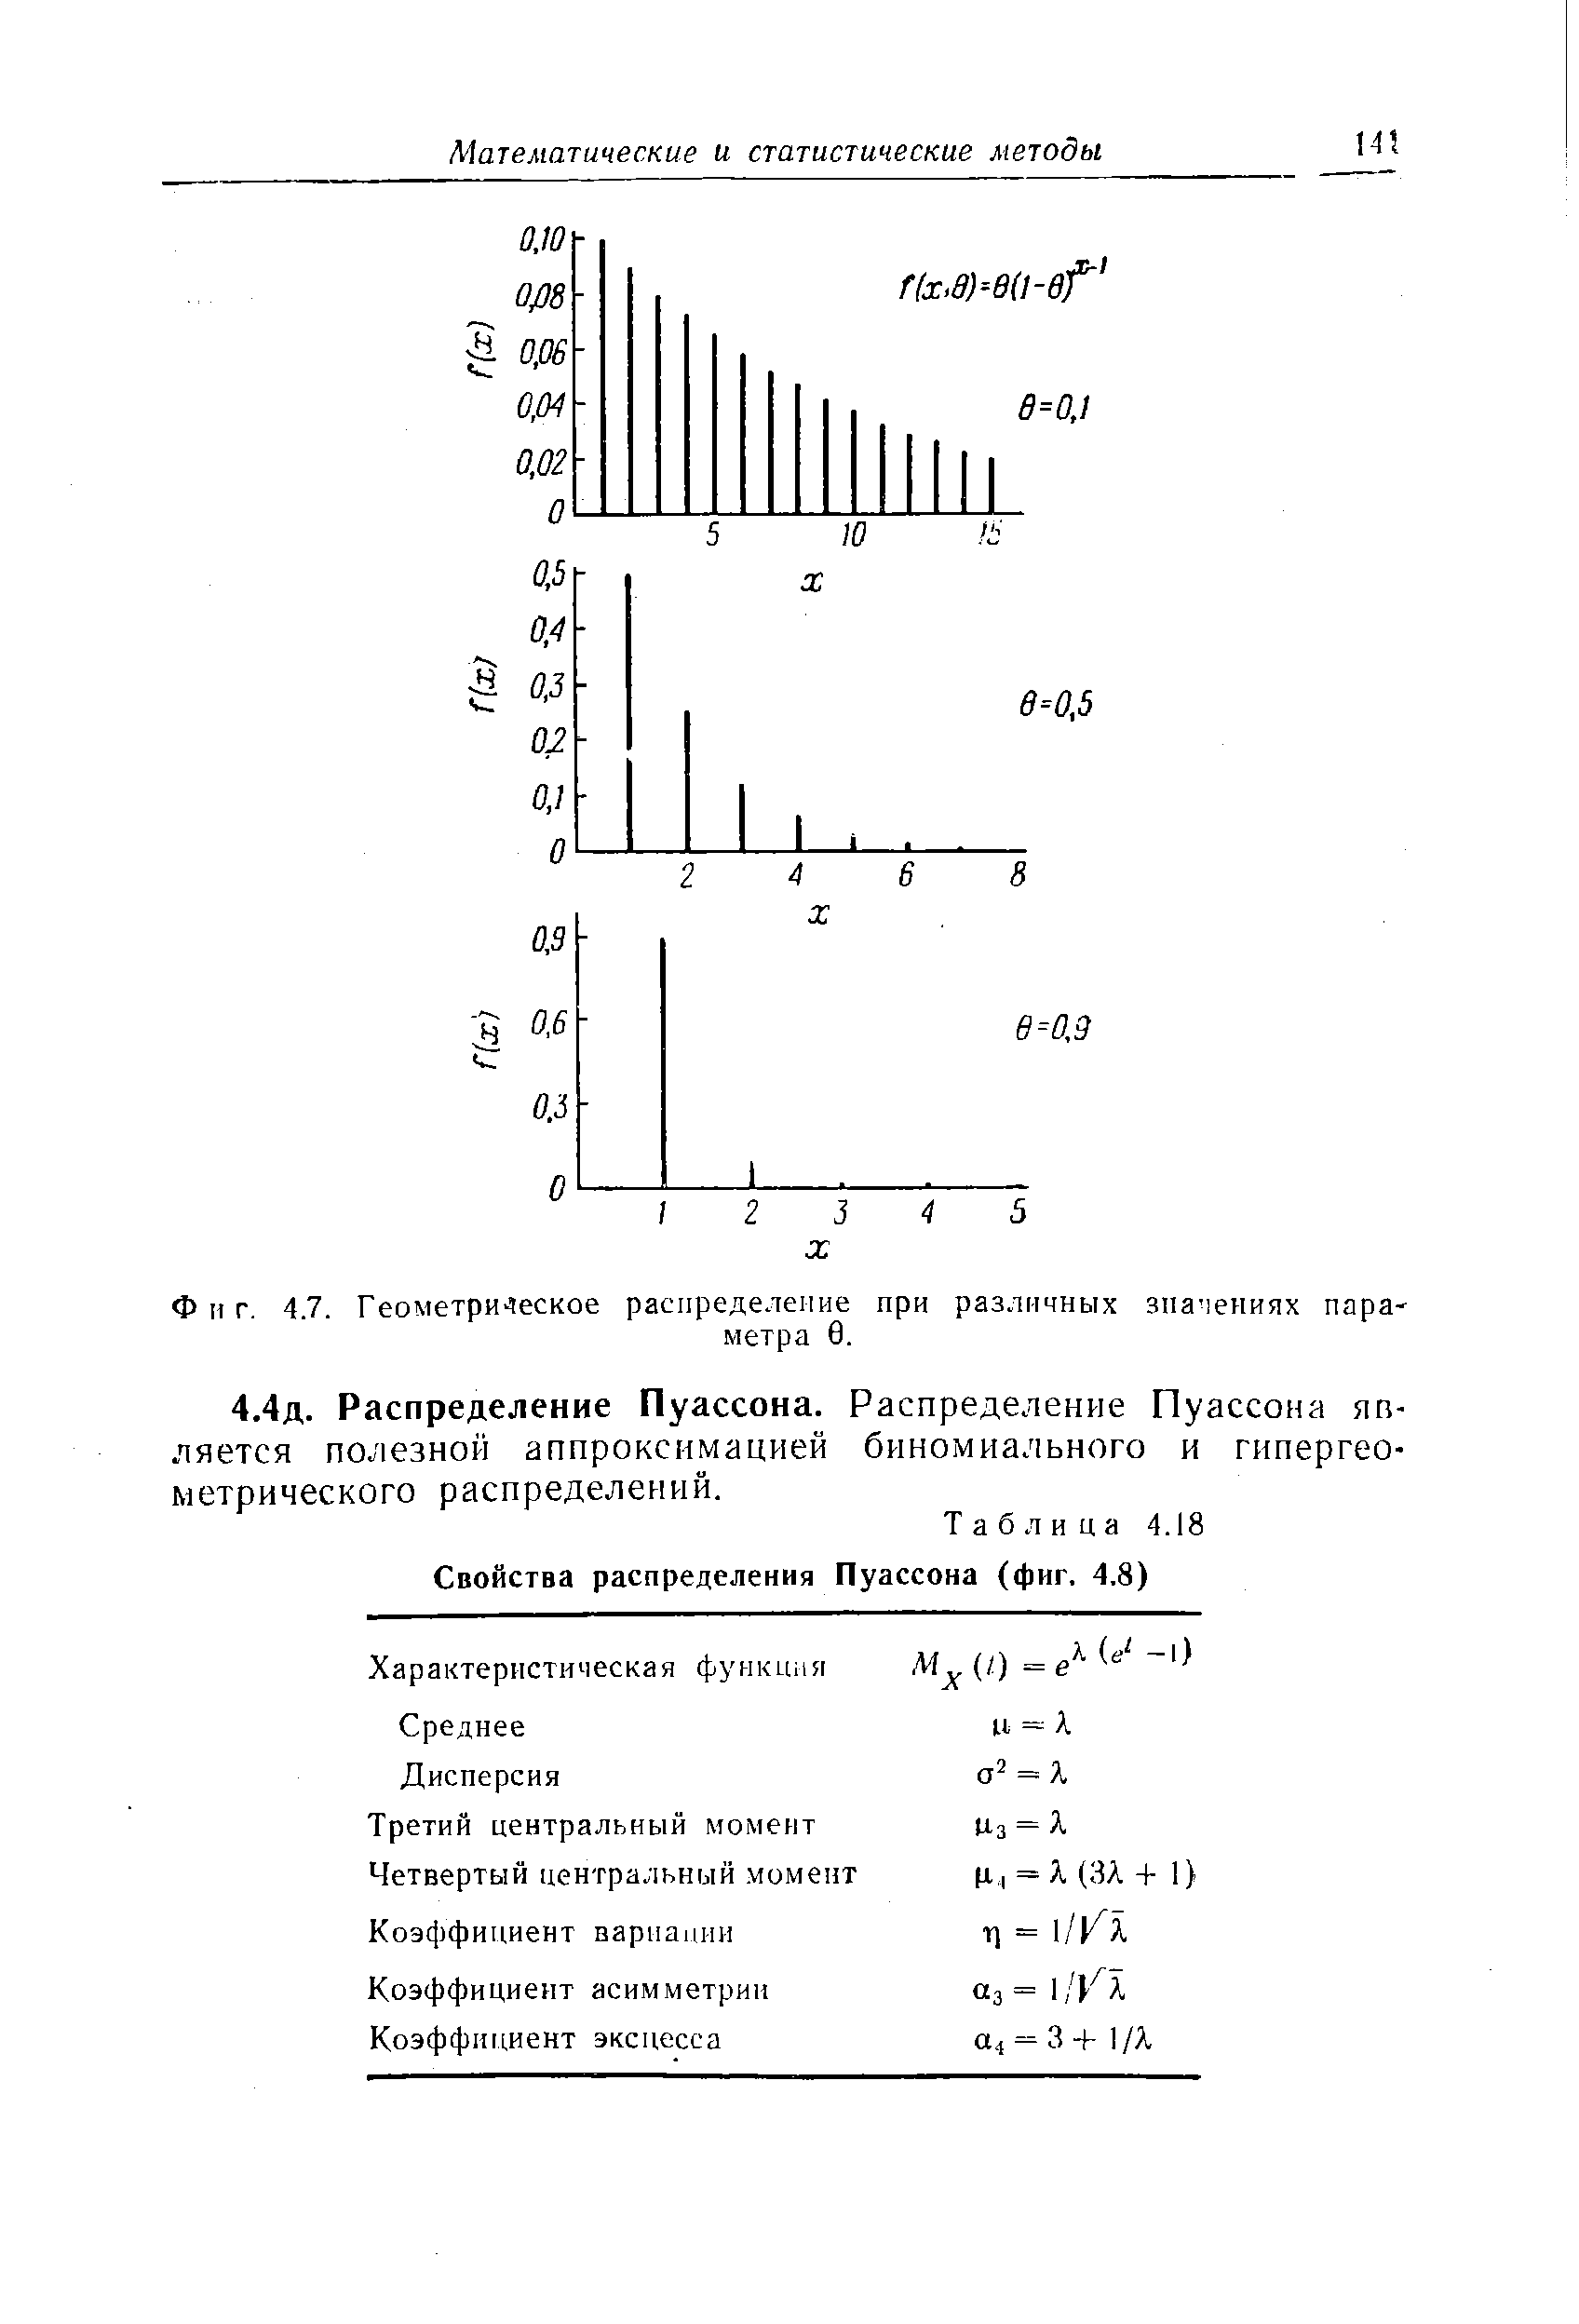 Таблица 4.18 Свойства распределения Пуассона (фиг. 4.8)
